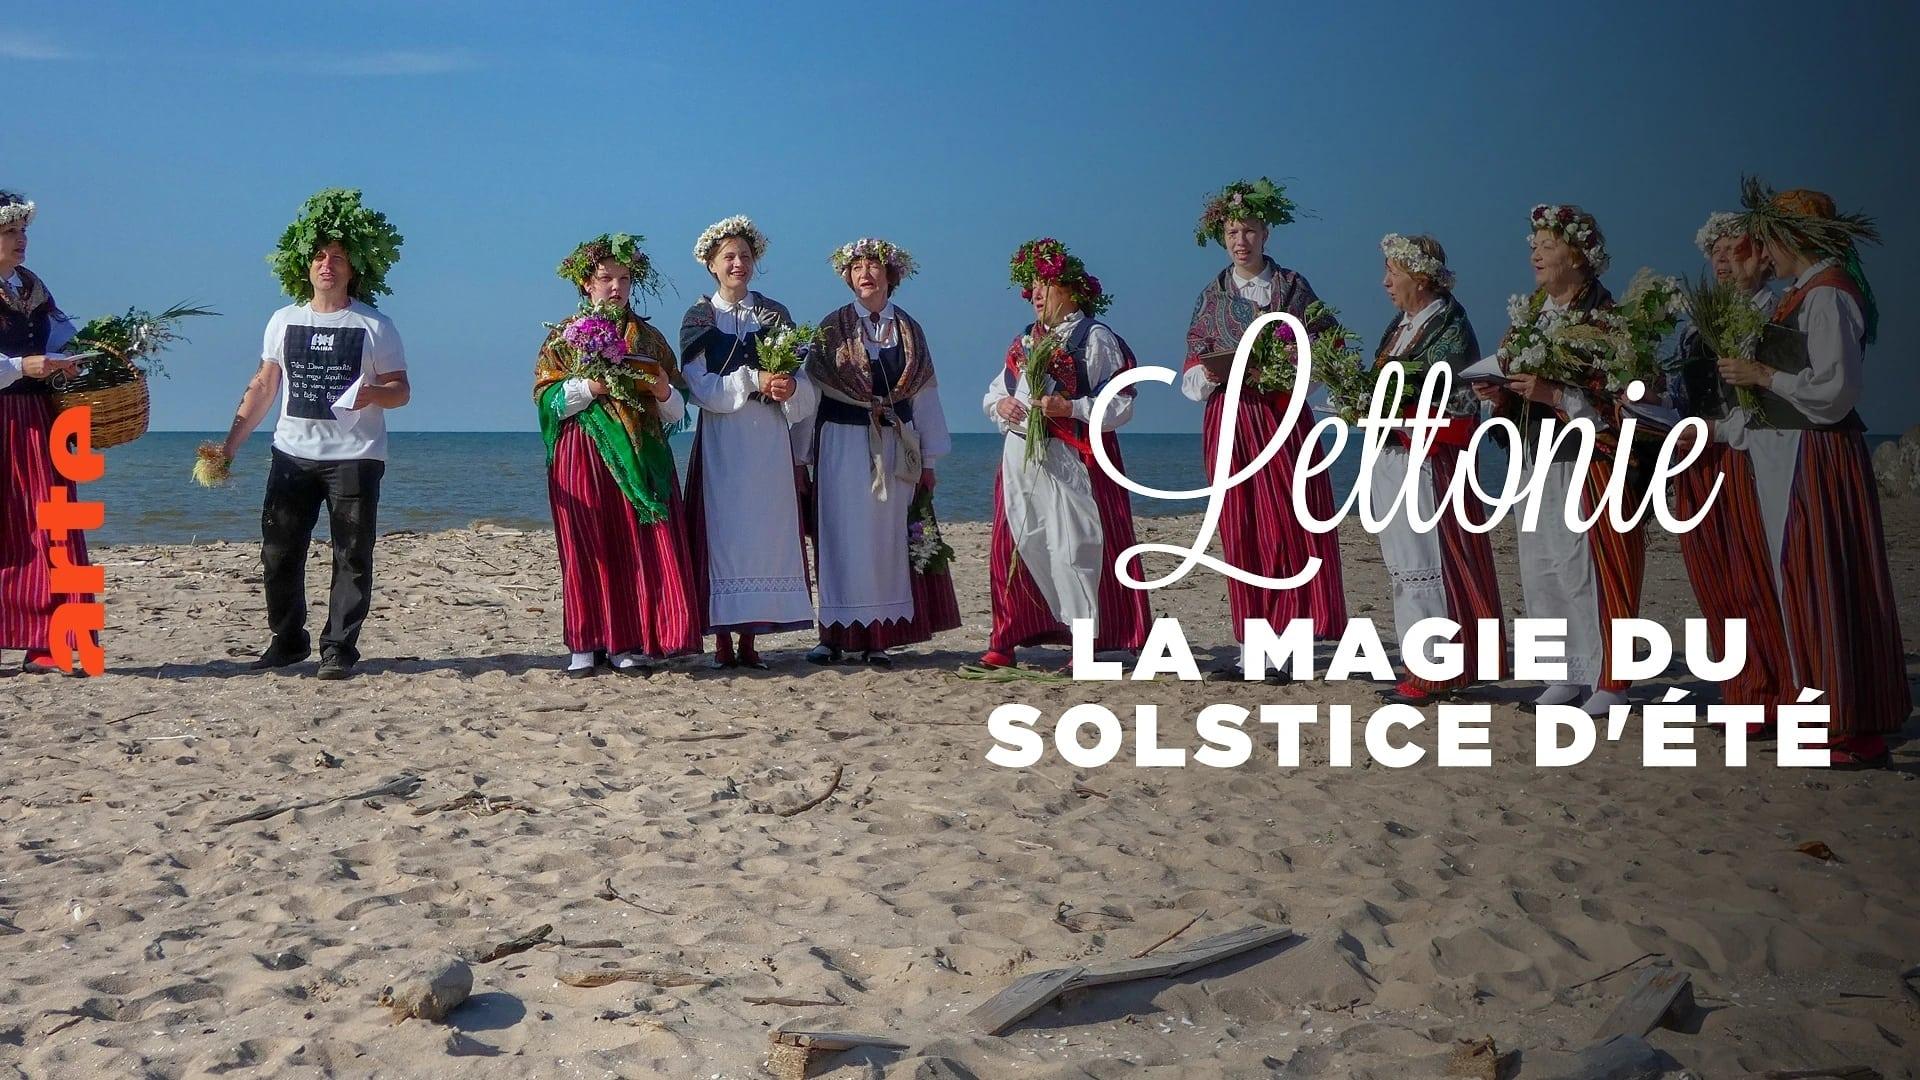 Lettonie, la magie du solstice d'été backdrop